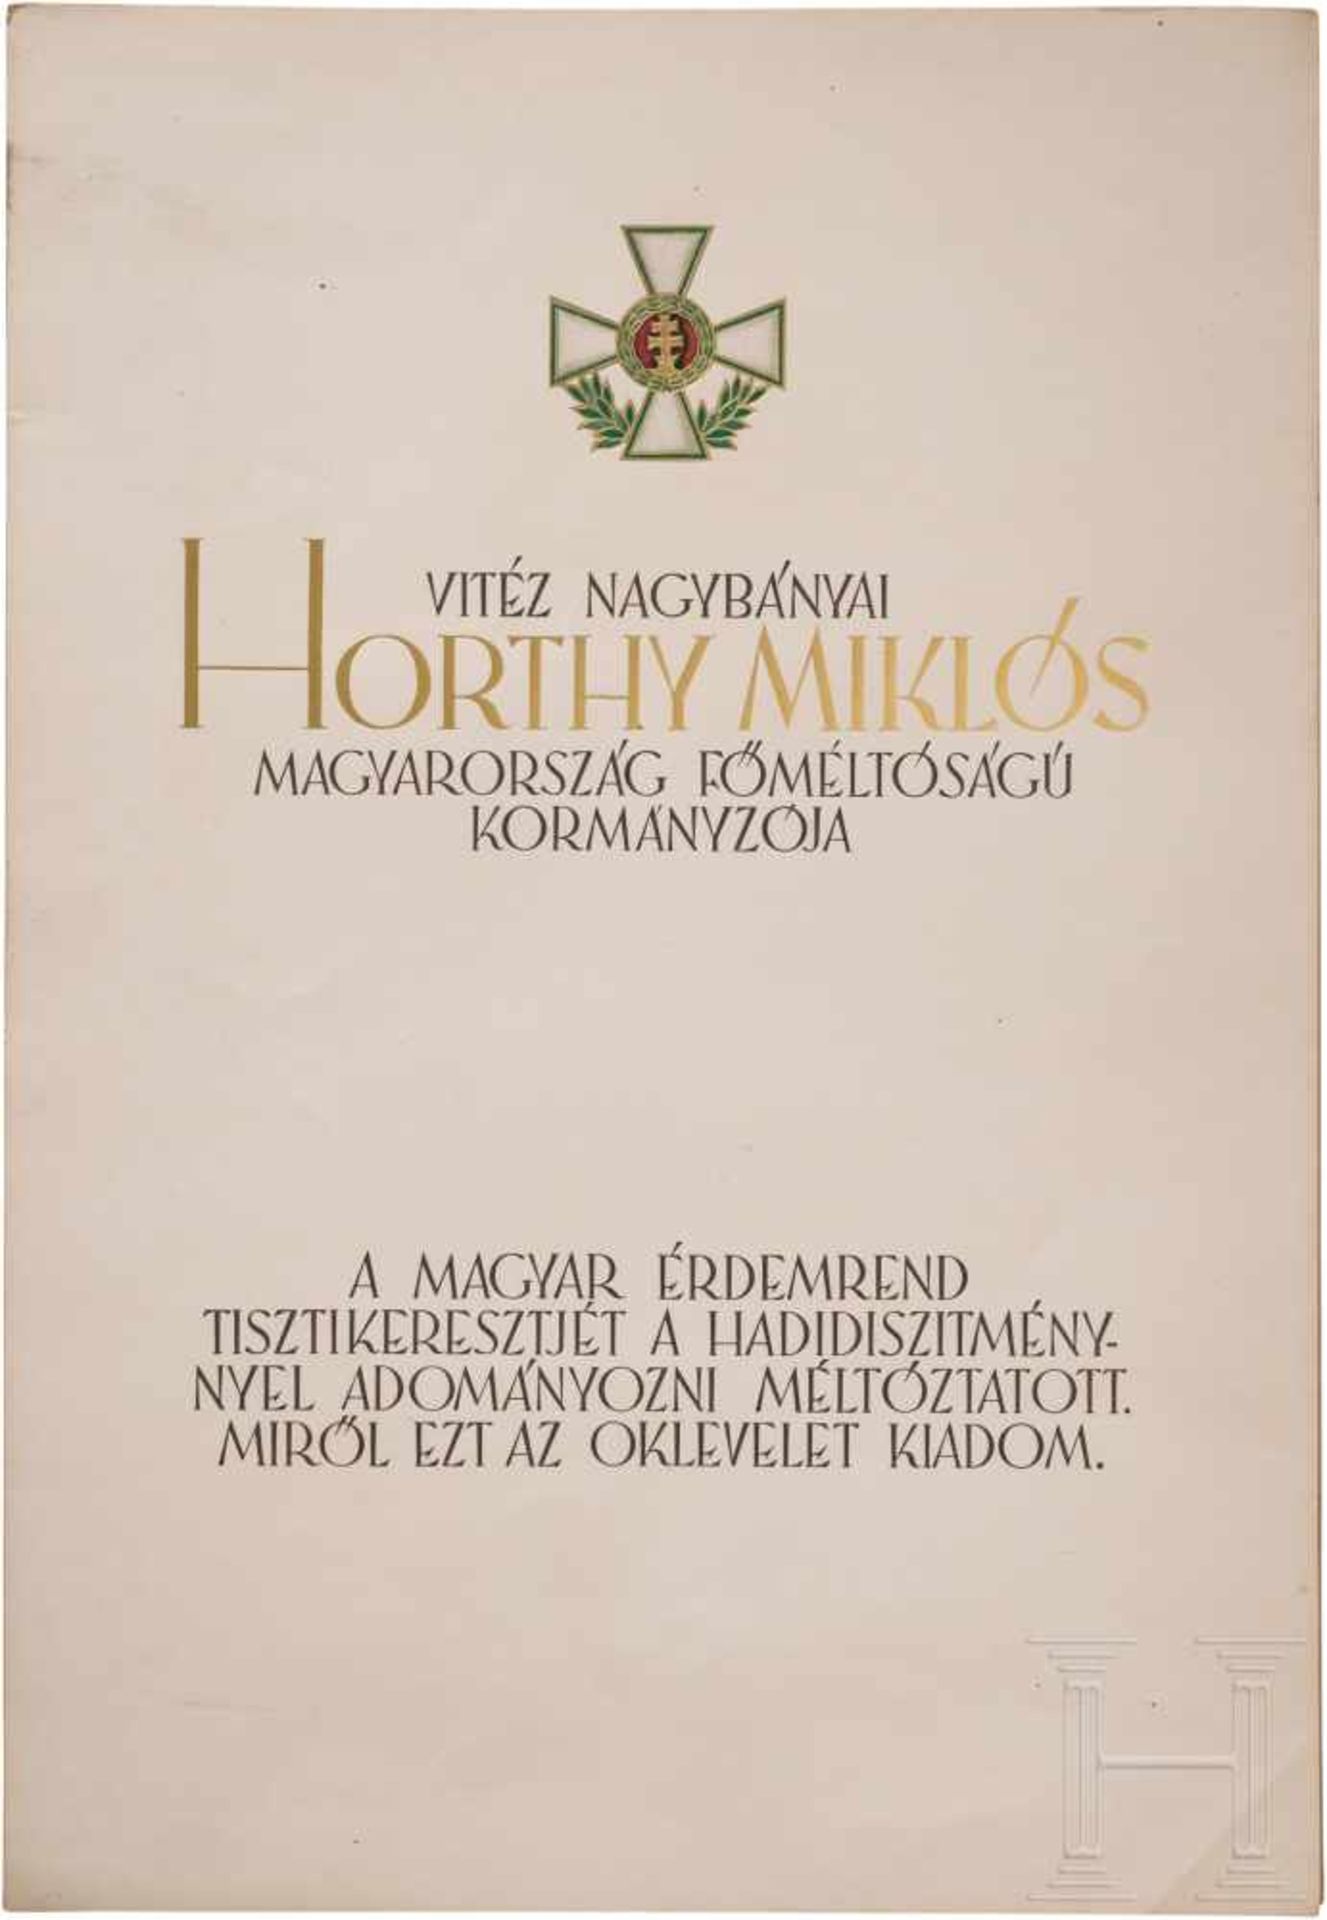 Drei Blanko-Verleihungsurkunden zum VerdienstordenGroßformatige Urkunden mit schwarz gedrucktem